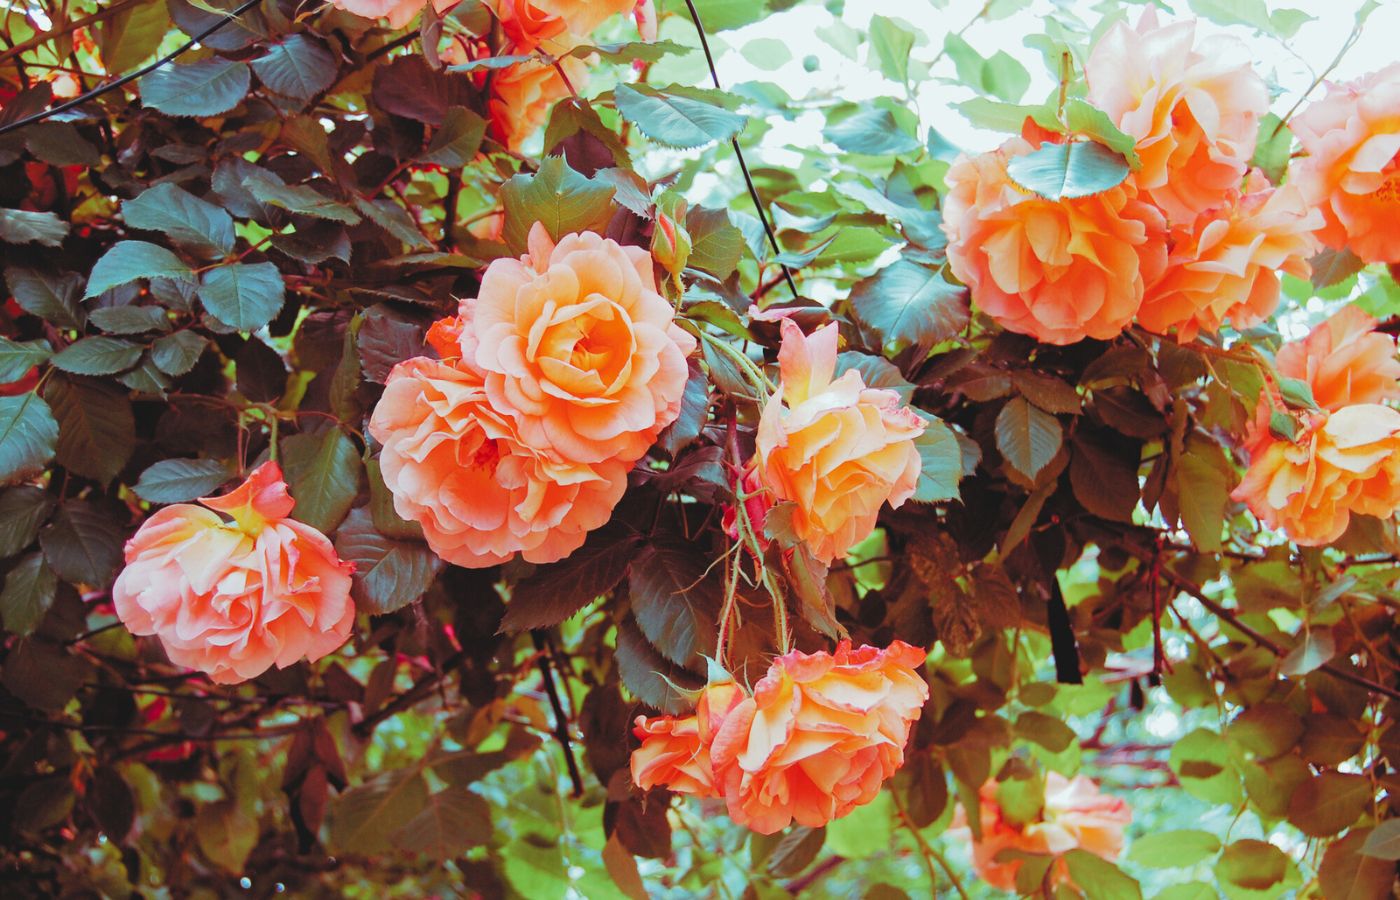 Eduardo – Ja sam tvoja majka, mistična ruža